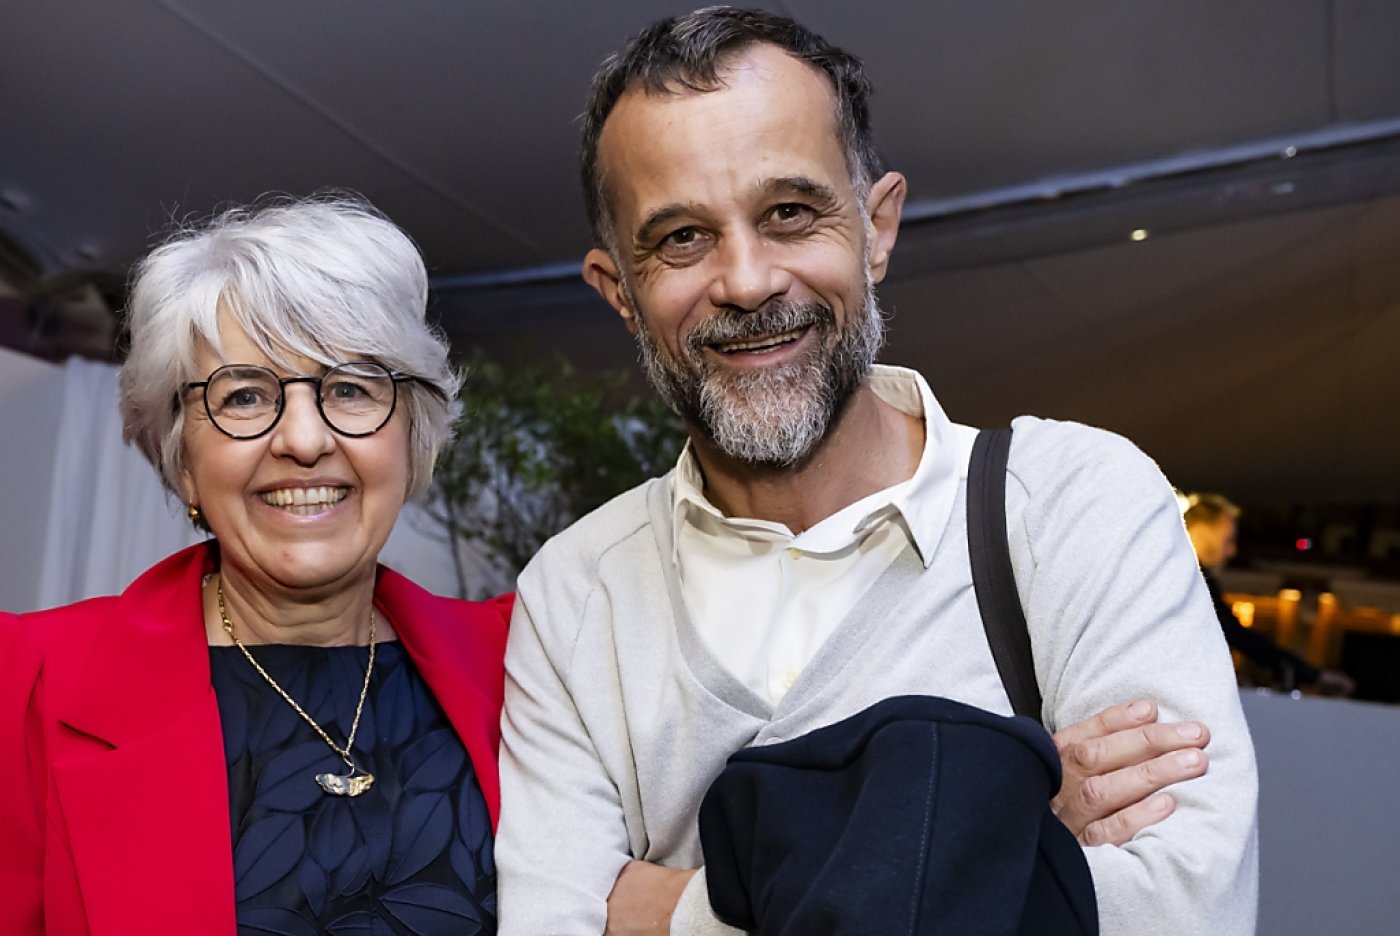 La conseillère fédérale Elisabeth Baume-Schneider avec le réalisateur valaisan Claude Barras, avant la projection de son nouveau film "Sauvages" au Festival de Cannes vendredi. KEYSTONE